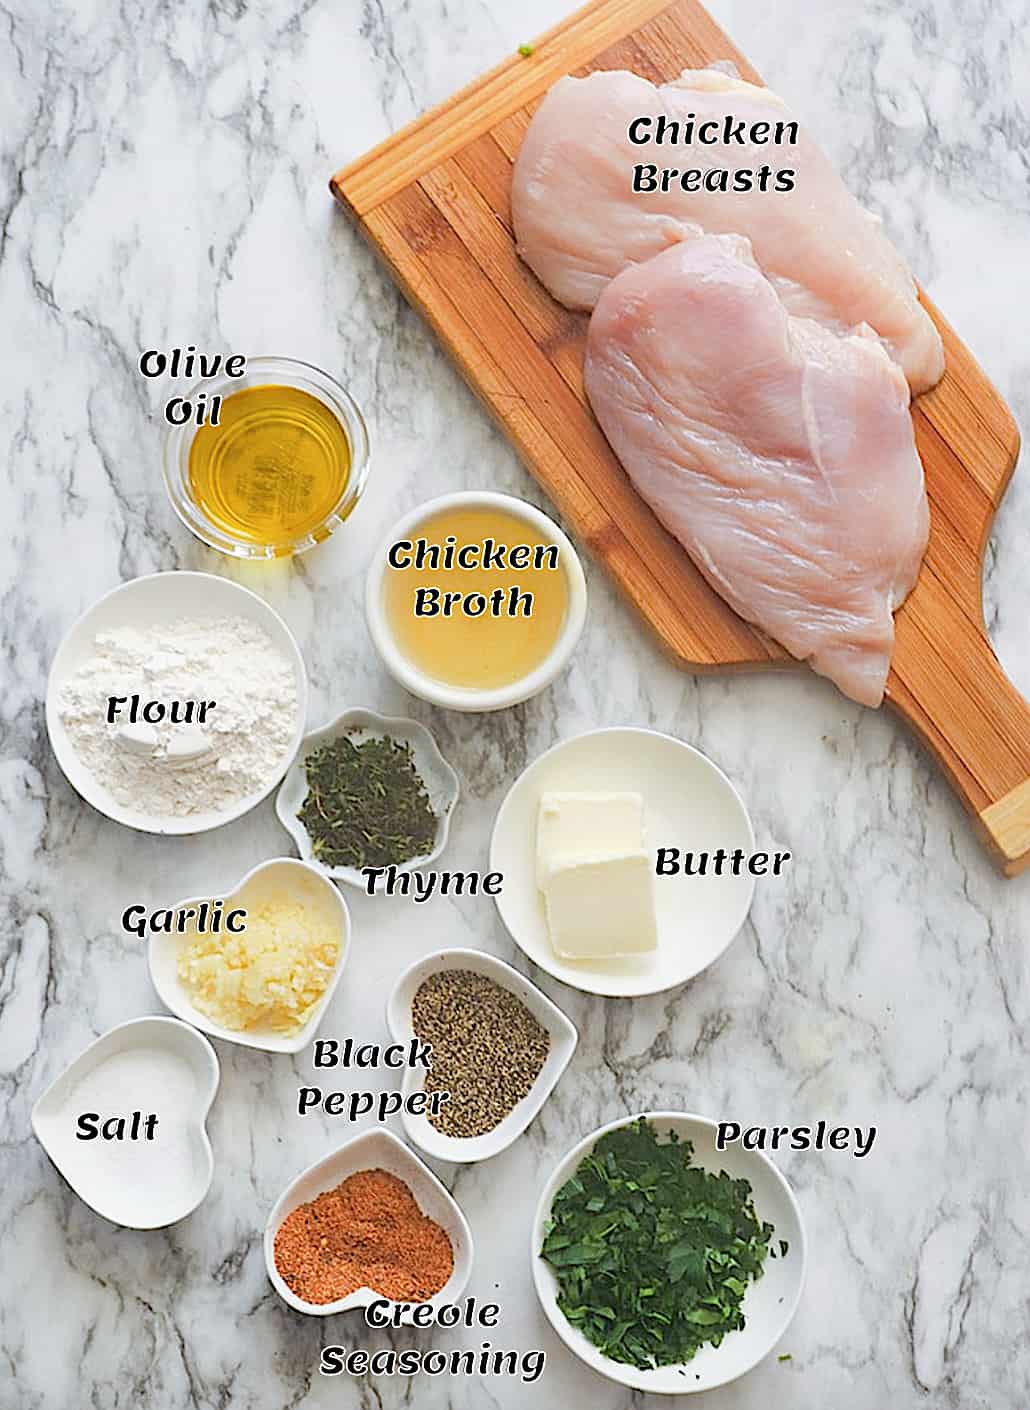 Chicken and Gravy Recipe Ingredients